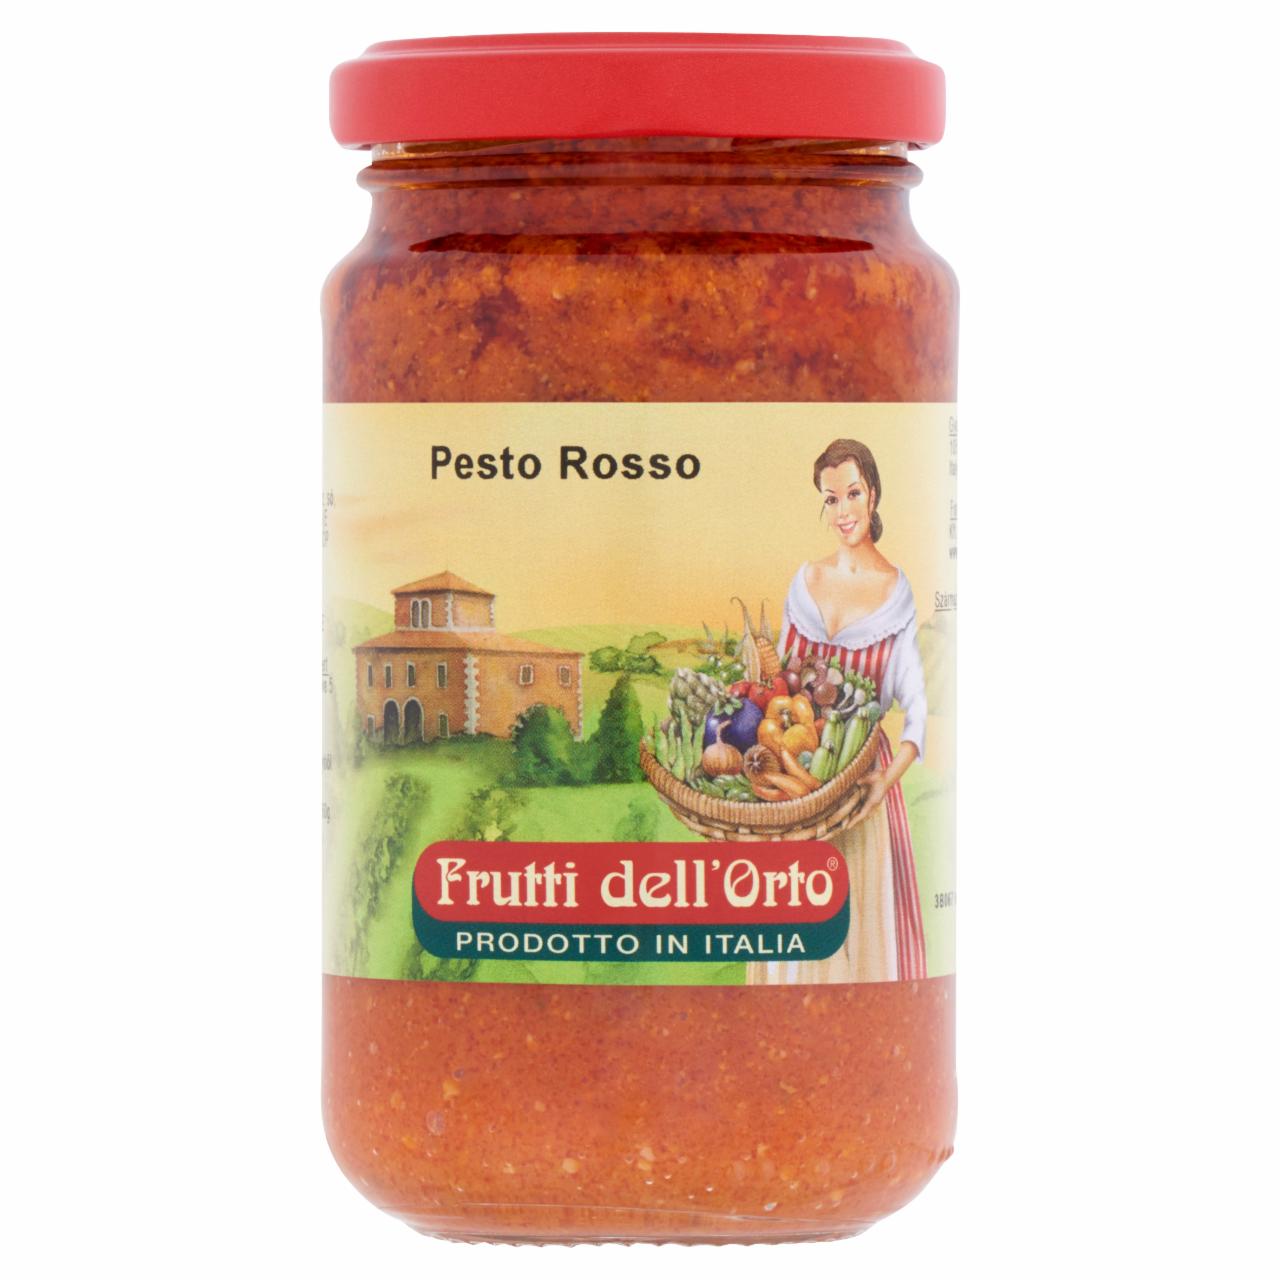 Képek - Frutti dell'Orto Pesto Rosso vörös pesto 190 g